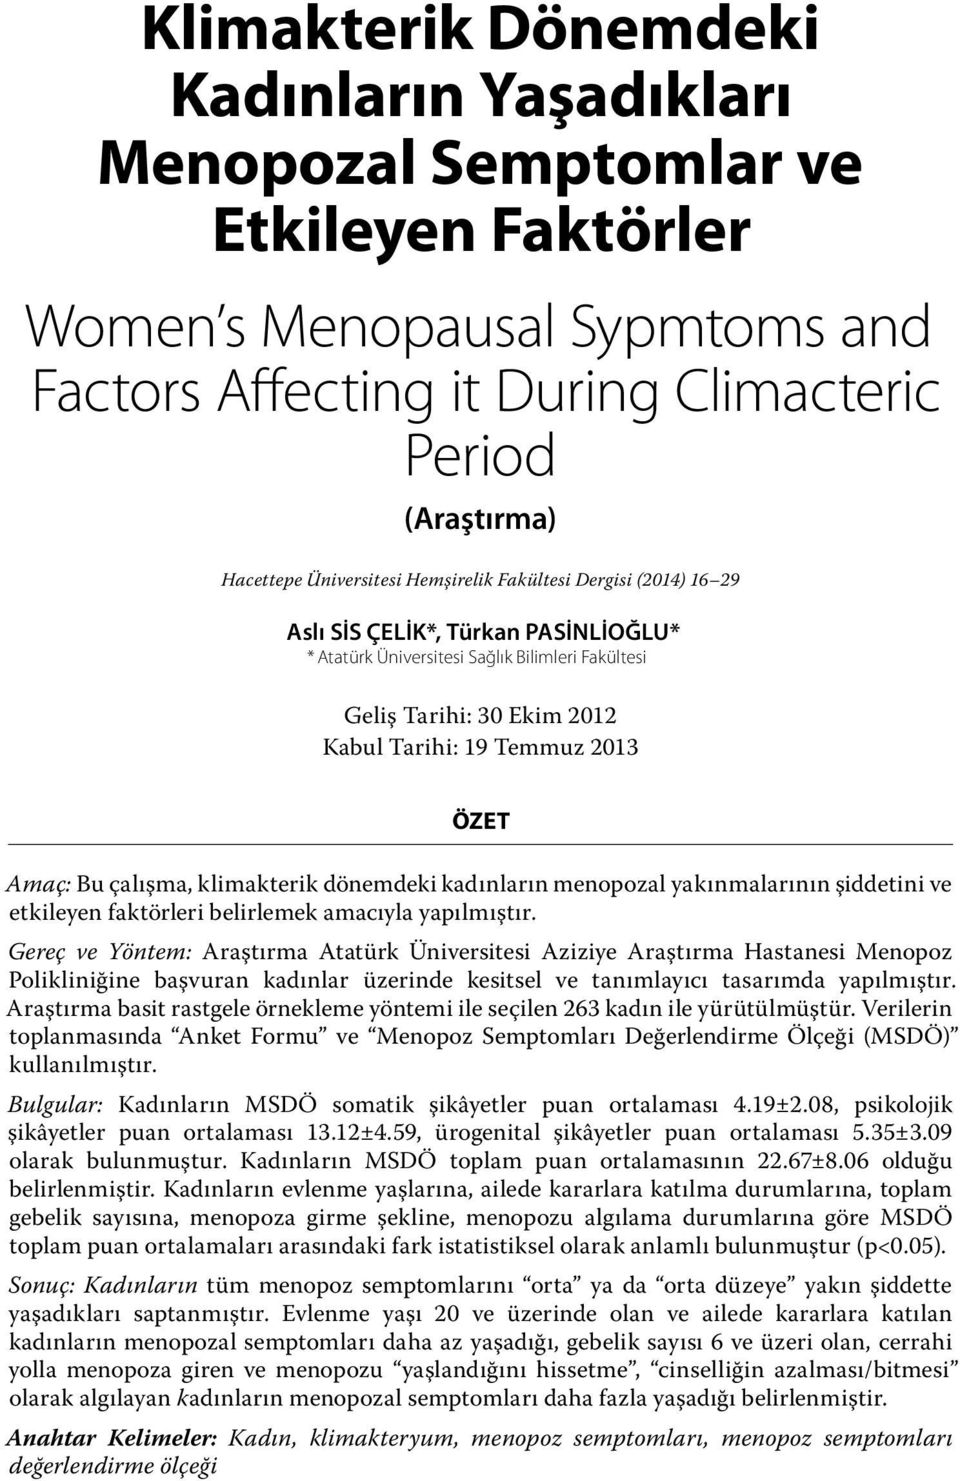 ÖZET Amaç: Bu çalışma, klimakterik dönemdeki kadınların menopozal yakınmalarının şiddetini ve etkileyen faktörleri belirlemek amacıyla yapılmıştır.